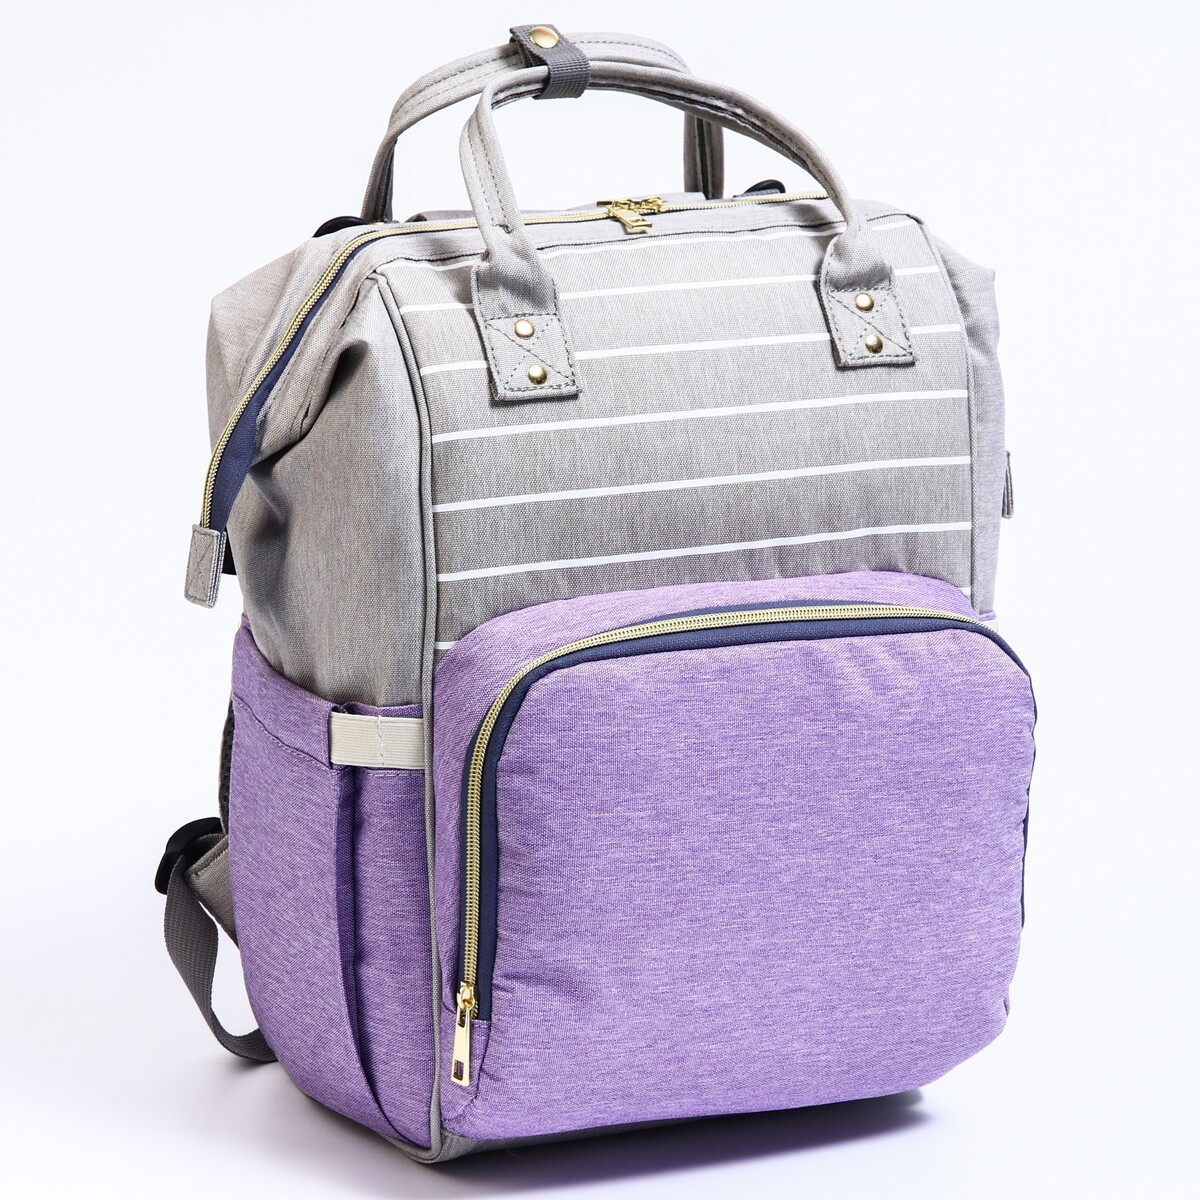 Рюкзак женский с термокарманом, термосумка - портфель, цвет серый/фиолетовый термосумка на молнии 8 л длинный ремень серый